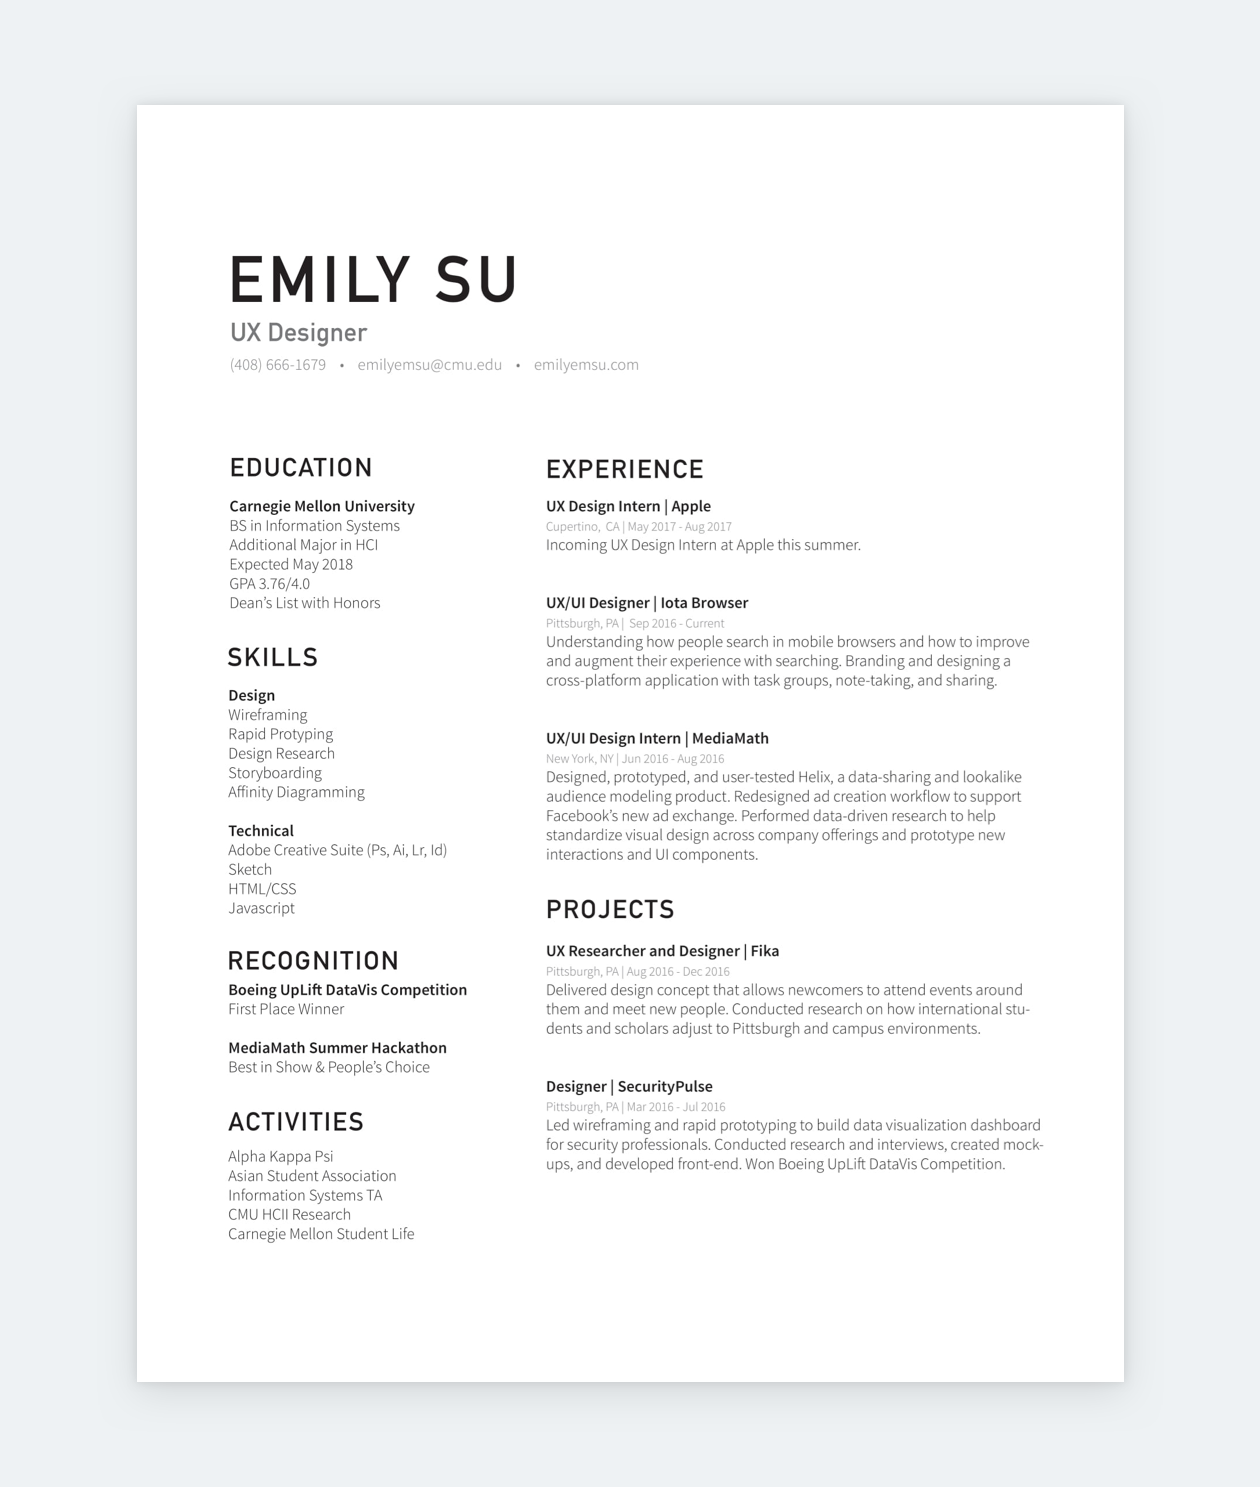 Emily Su's product designer resumé